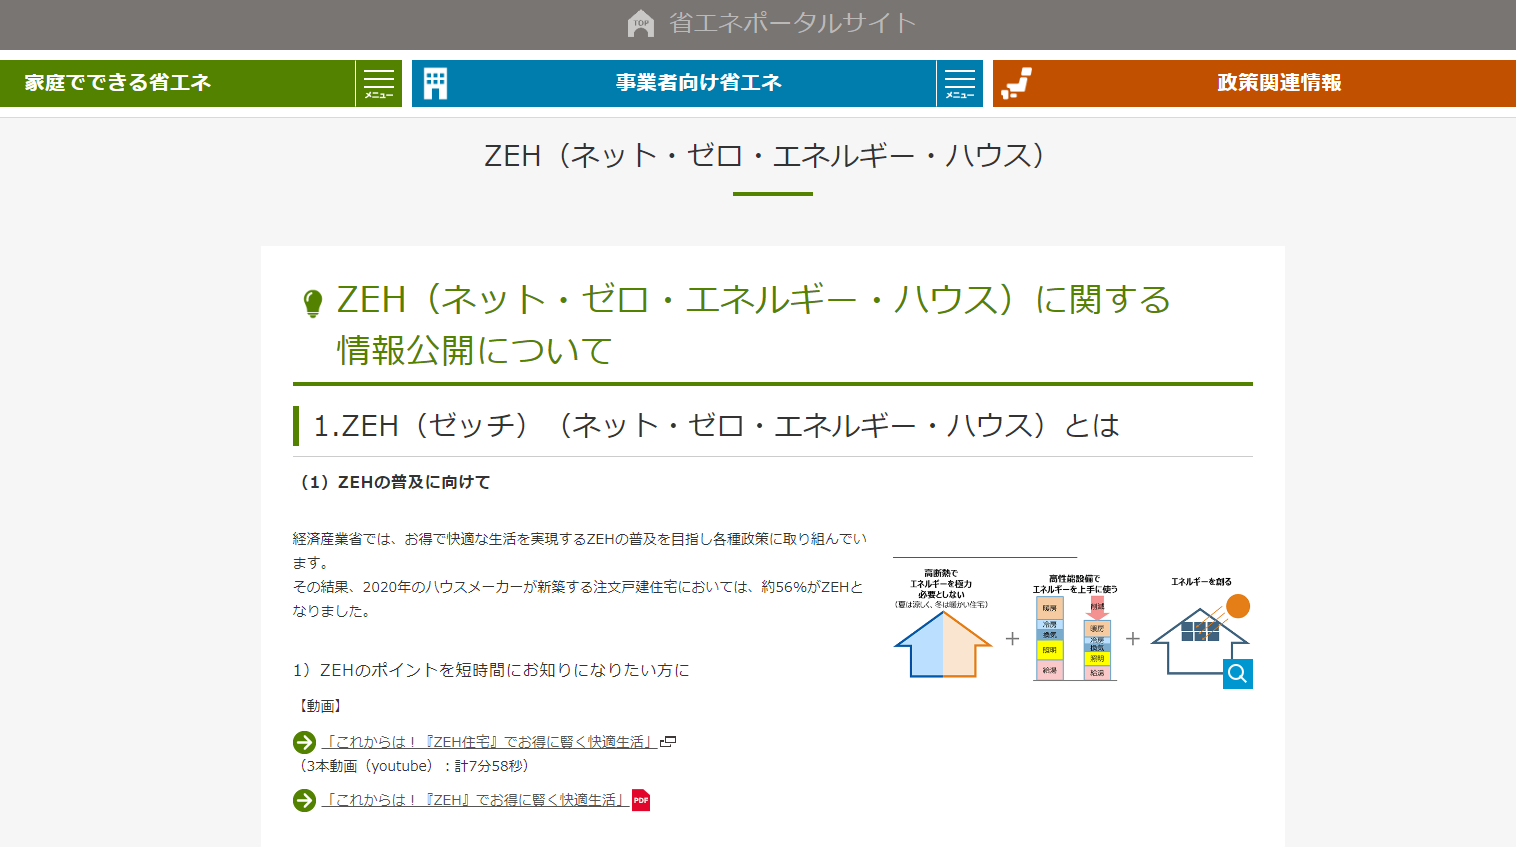 戸建住宅ネット・ゼロ・エネルギー・ハウス（ZEH） 化等支援事業